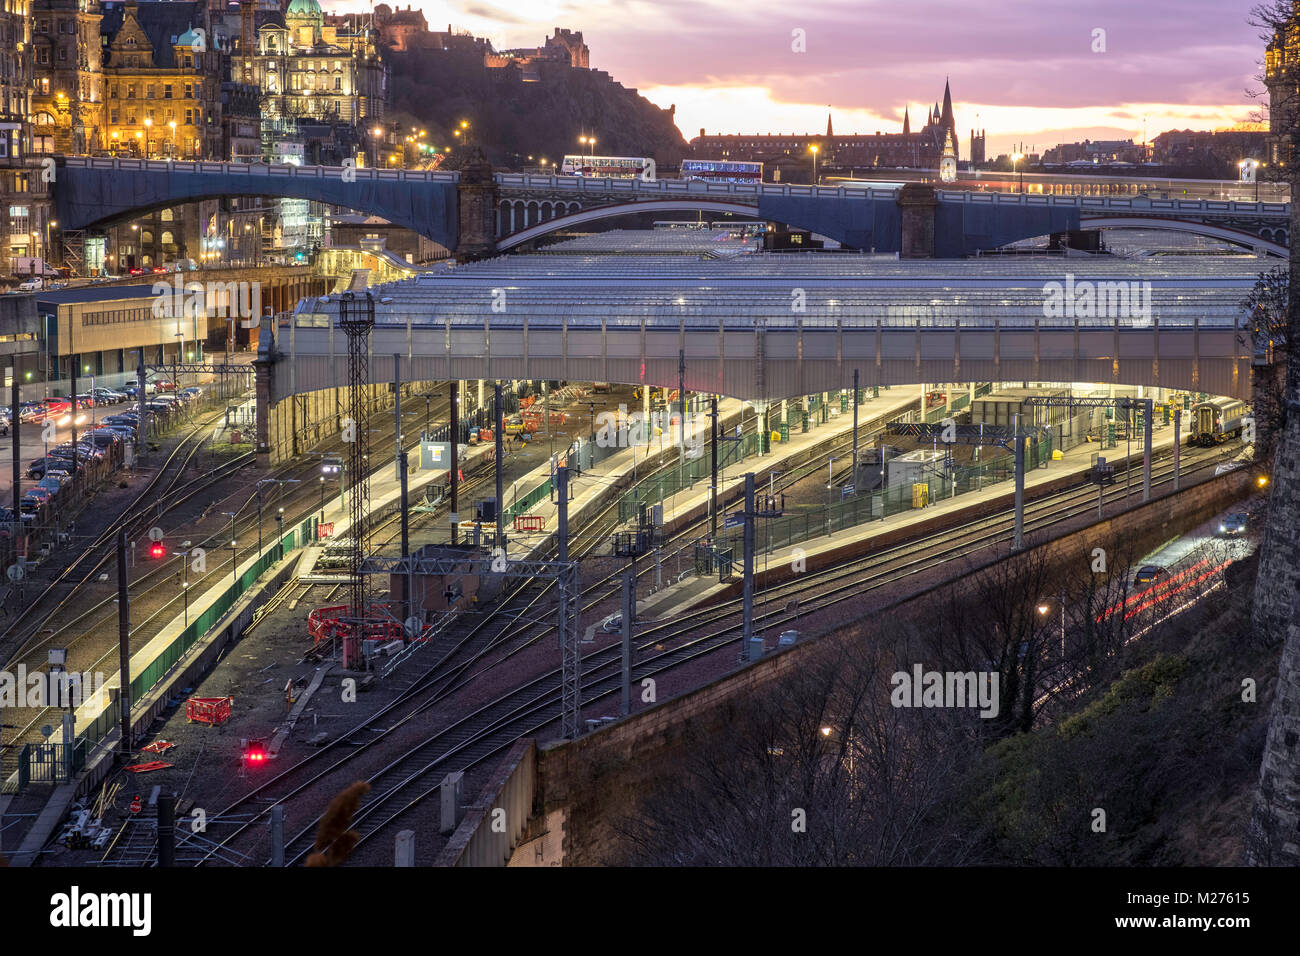 Vue de nuit de la gare de Waverley à Édimbourg, Écosse, Royaume-Uni Banque D'Images